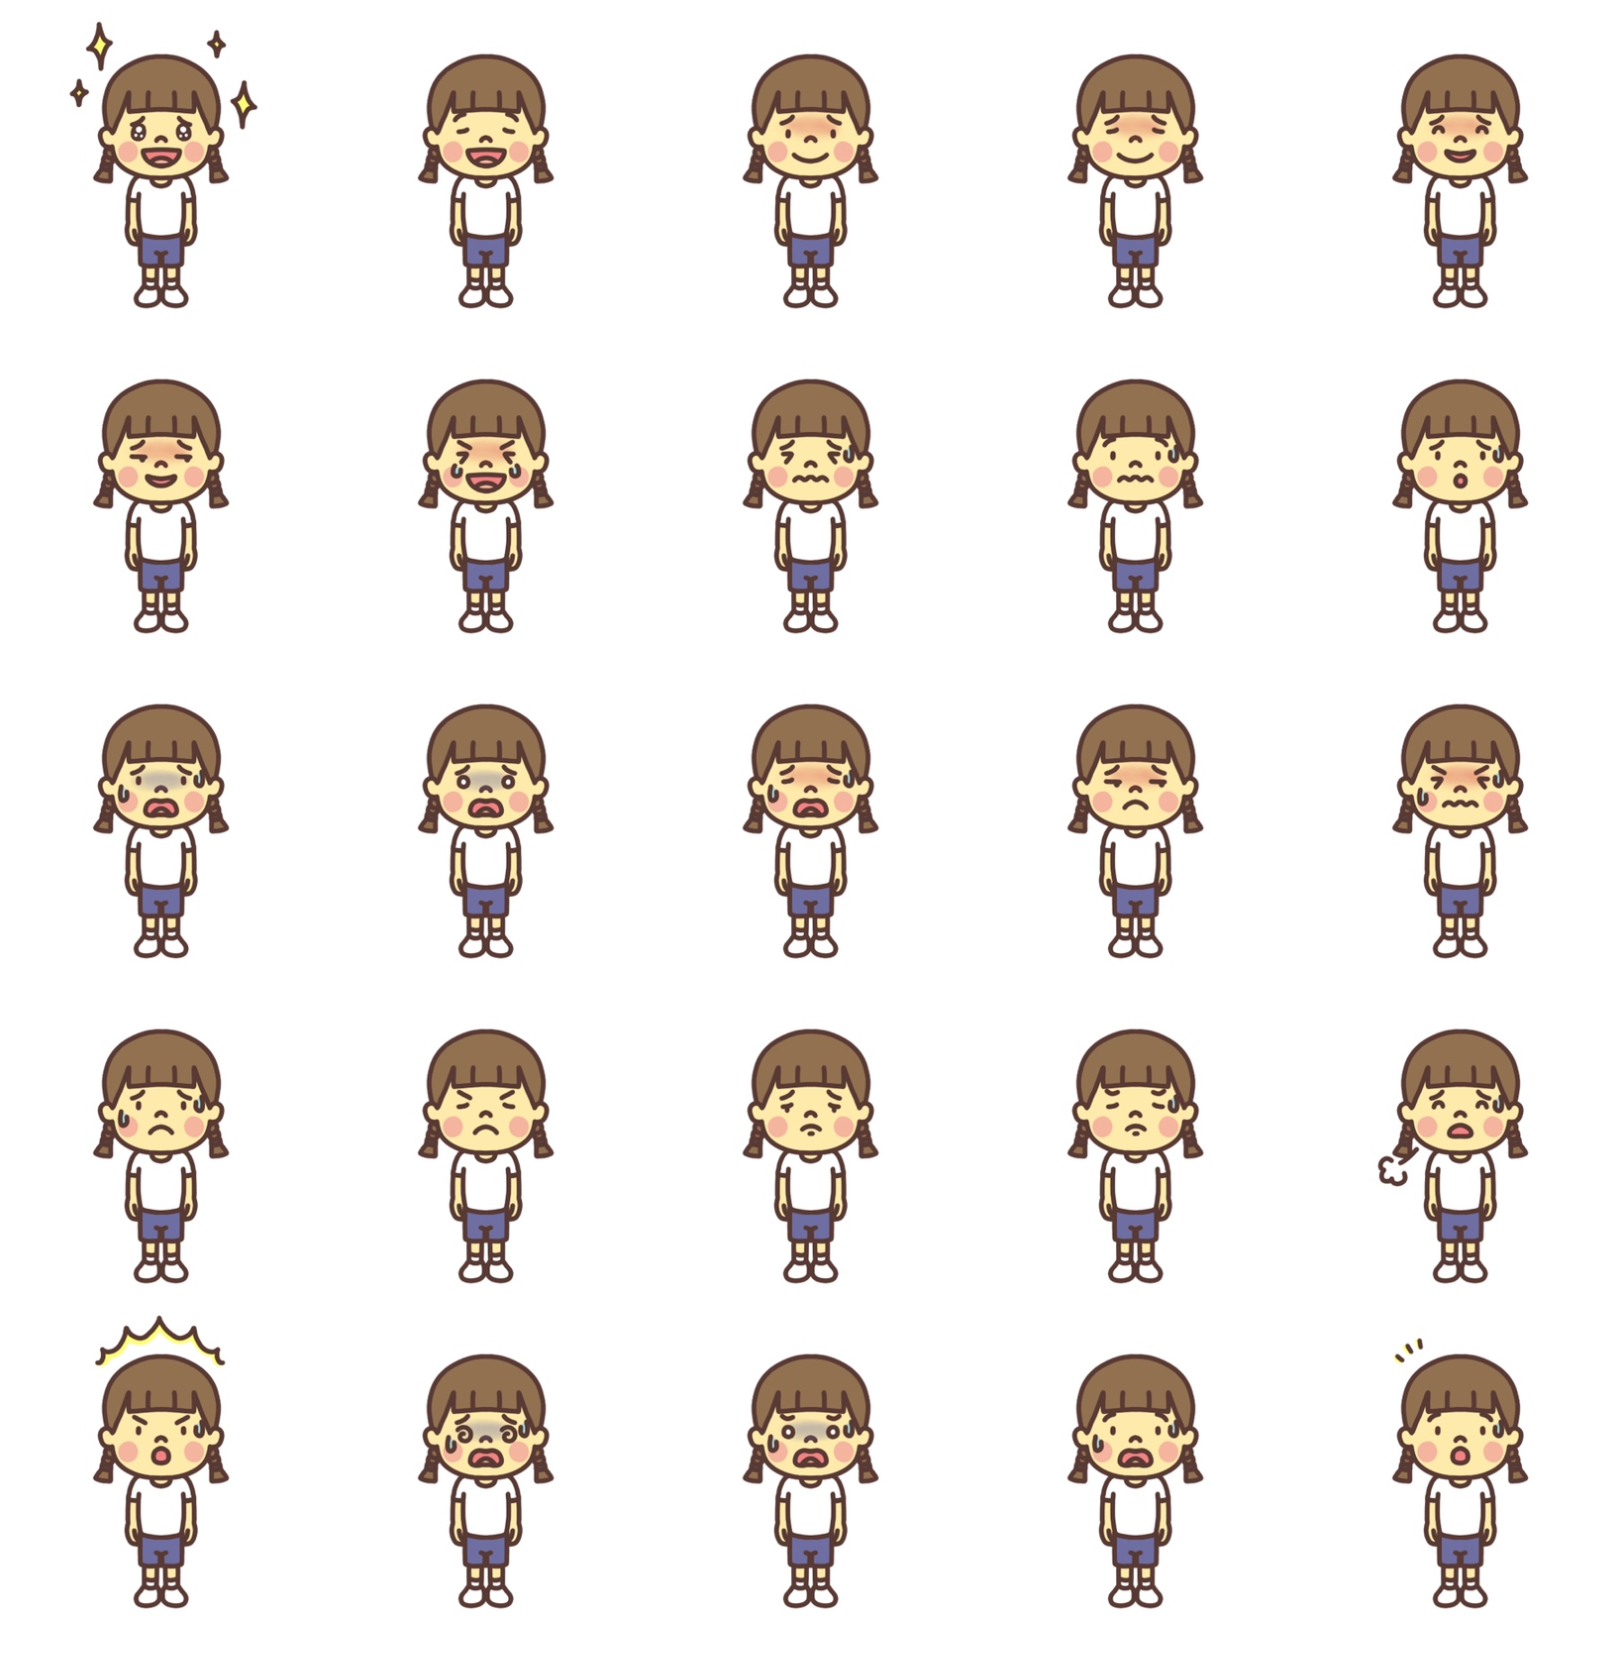 三つ編みの女の子のイラスト 感情による表情の変化89パターン